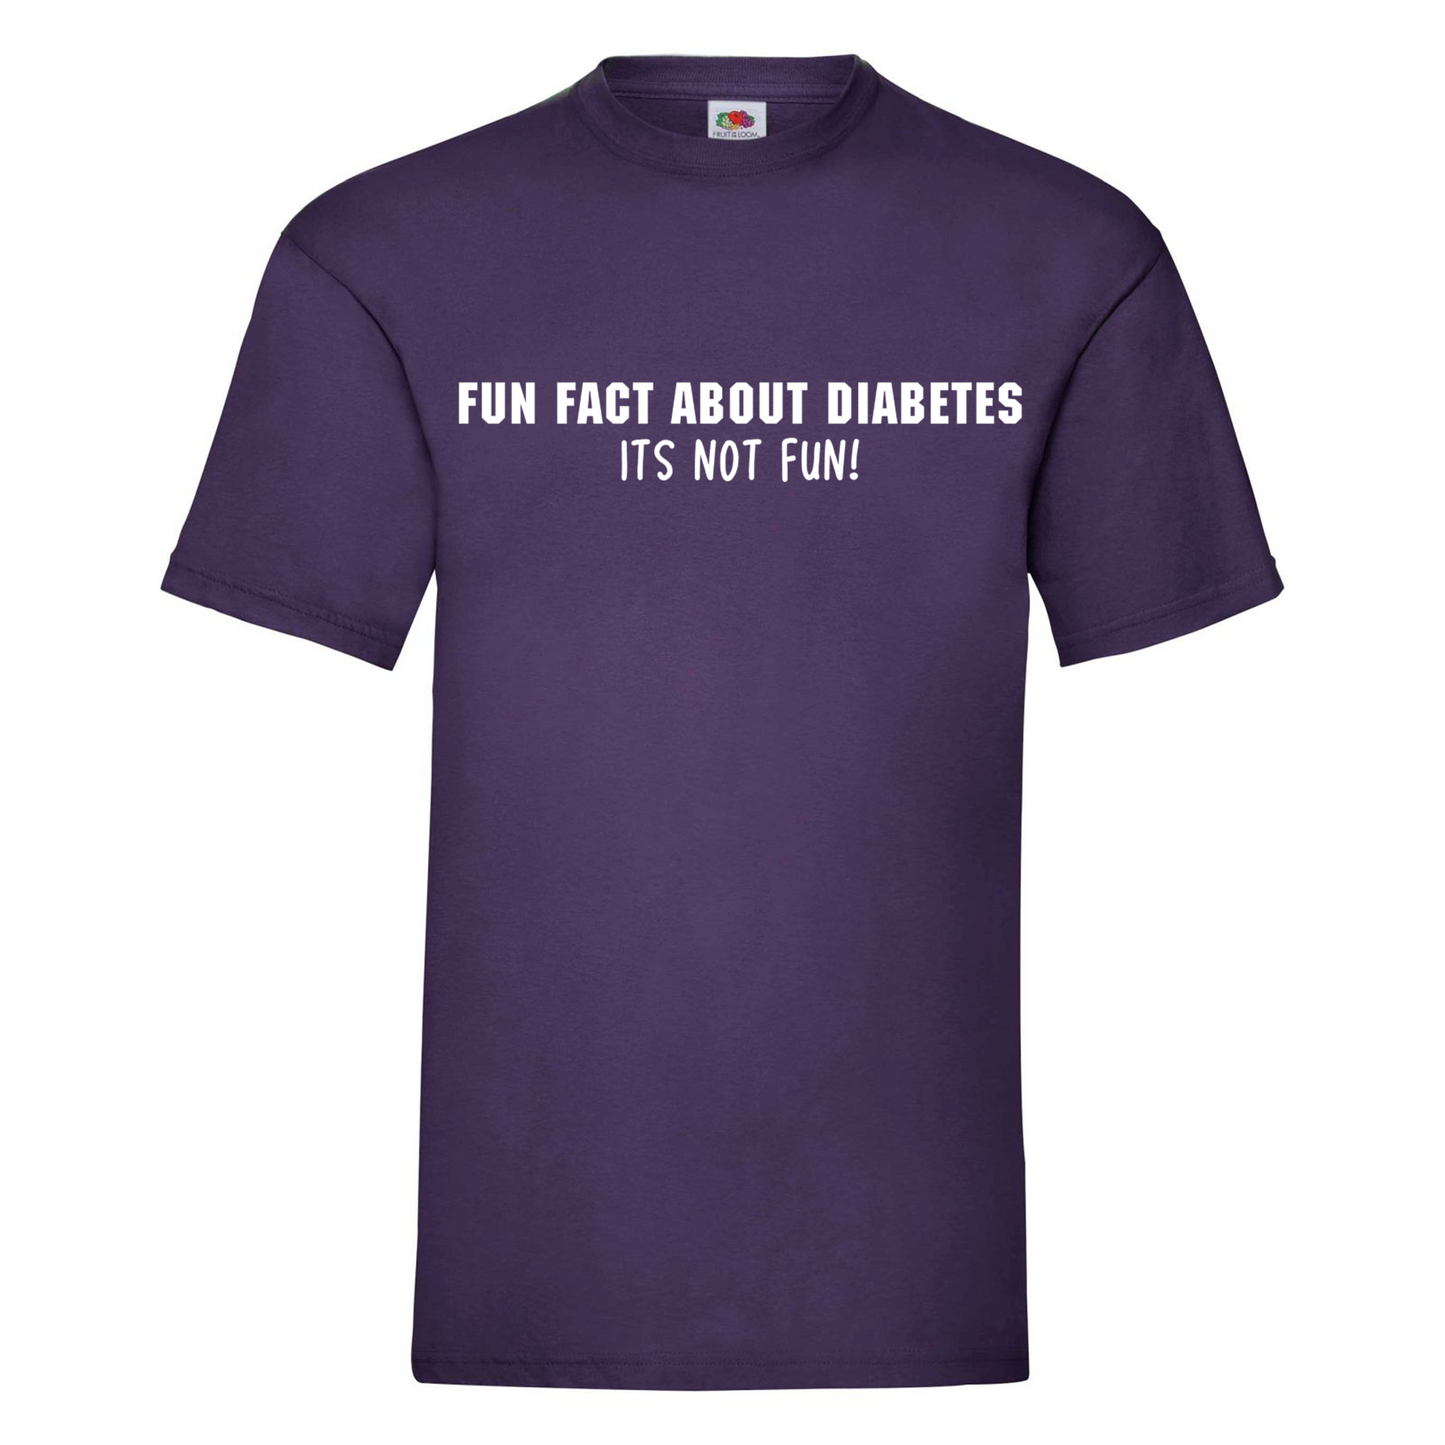 Fun Fact About Diabetes, Its Not Fun Kids T Shirt